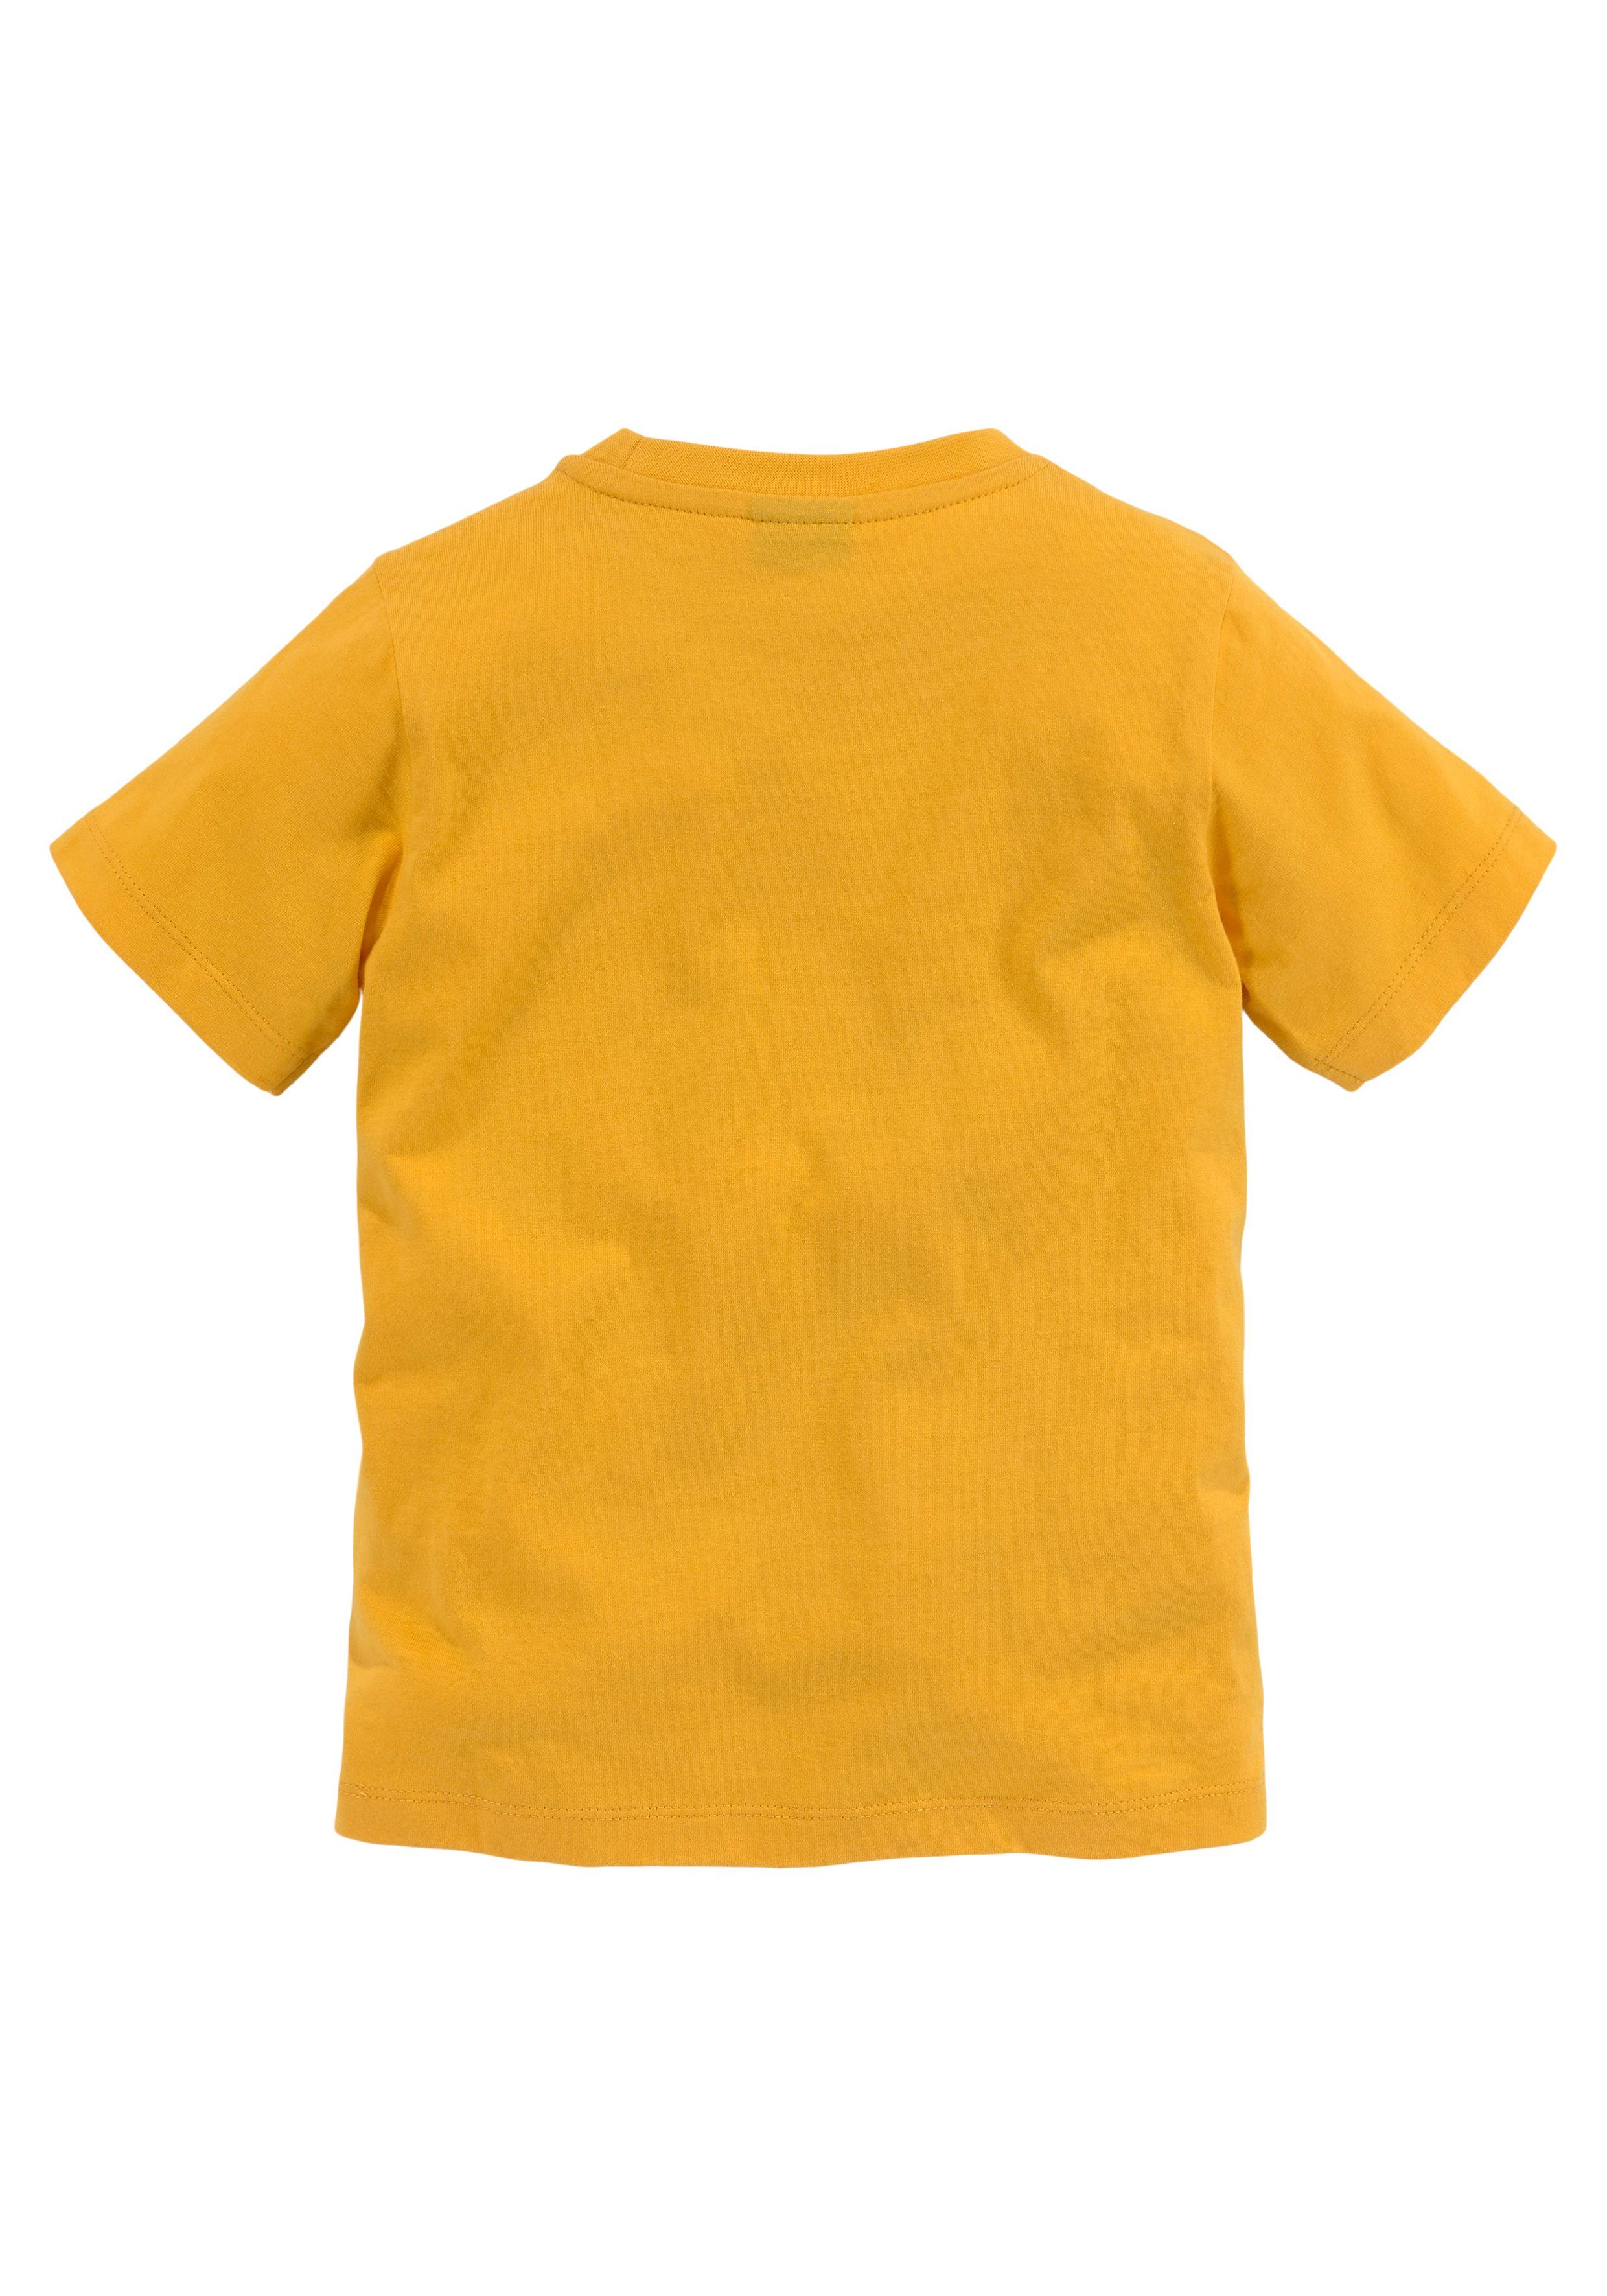 LITTLE TIGER KIDSWORLD T-Shirt